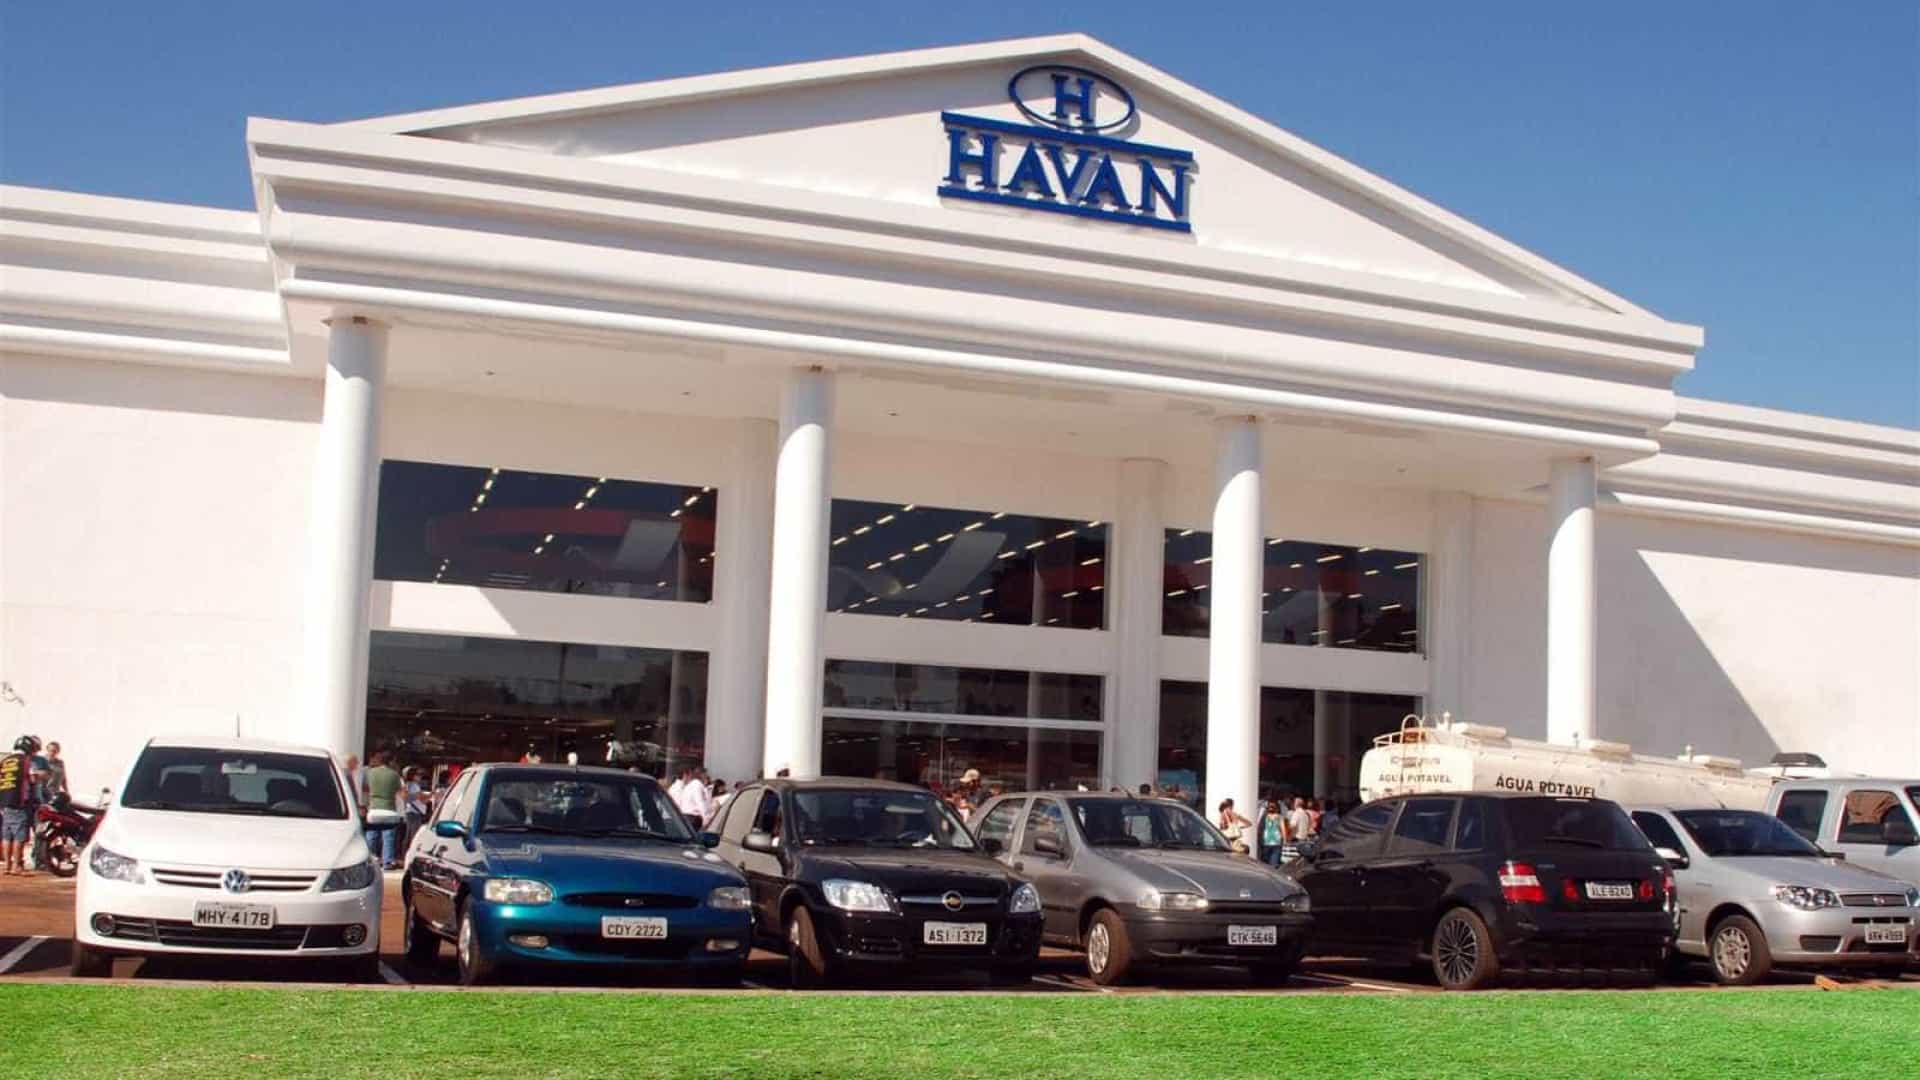 Funcionários da Havan que não tomaram a vacina contra a Covid estão proibidos de trabalhar, determina a Justiça. Foto da fachada da Havan, um prédio branco com letreiro azul. 